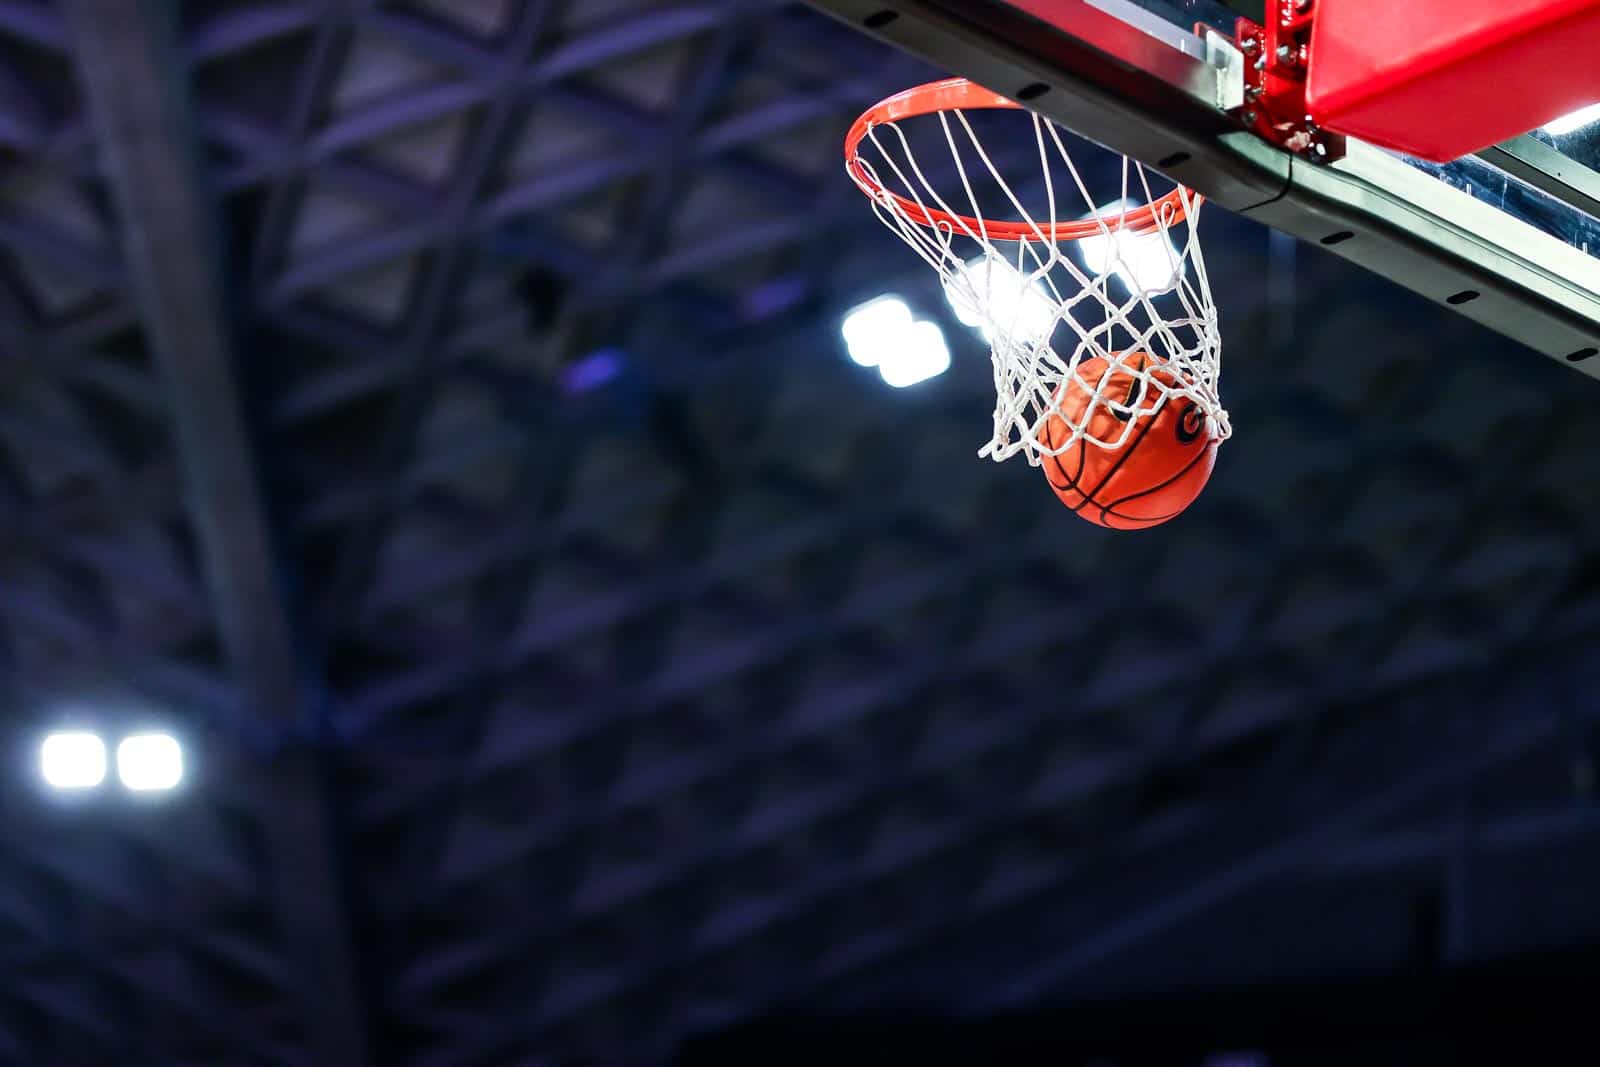 UGA Basketball